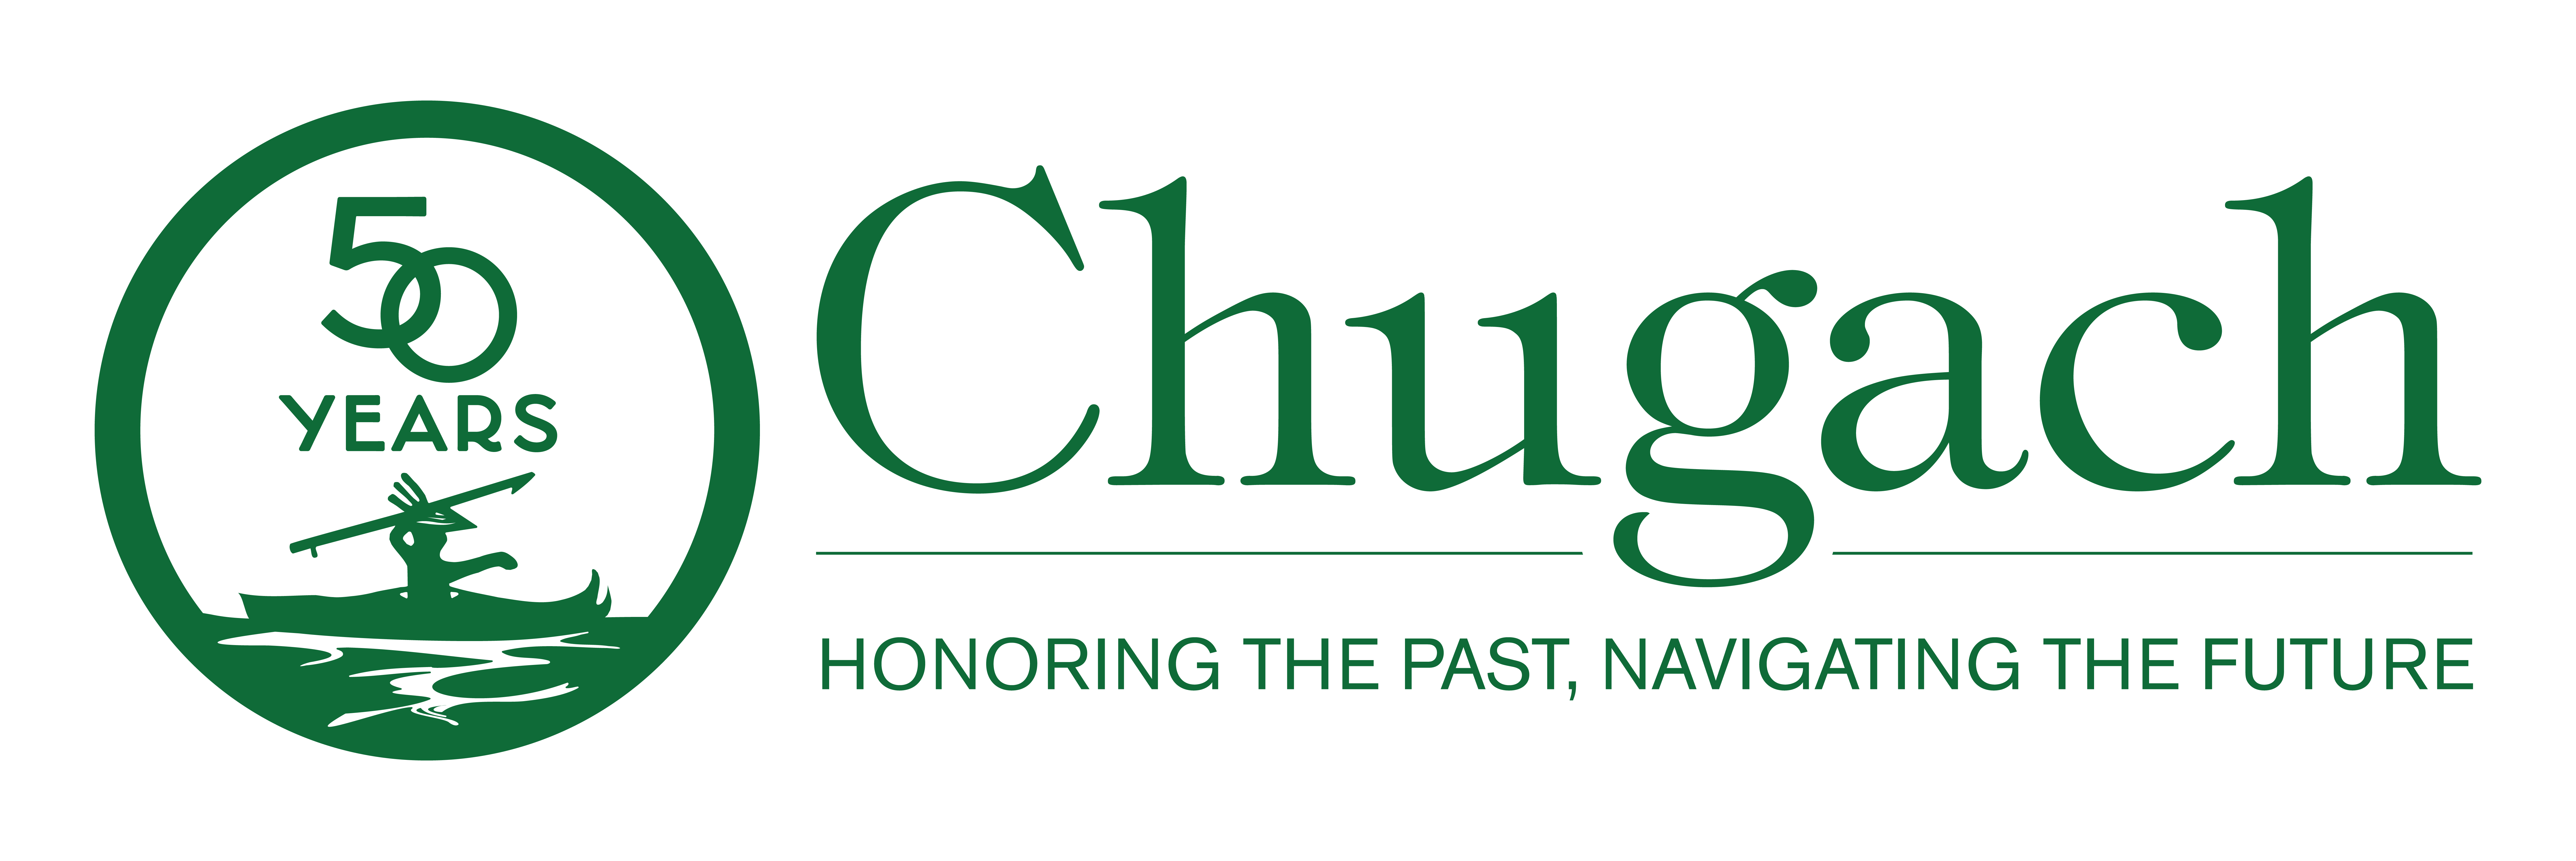 Chugach 50th Anniversary Logo - Tagline - Horizontal (002).png